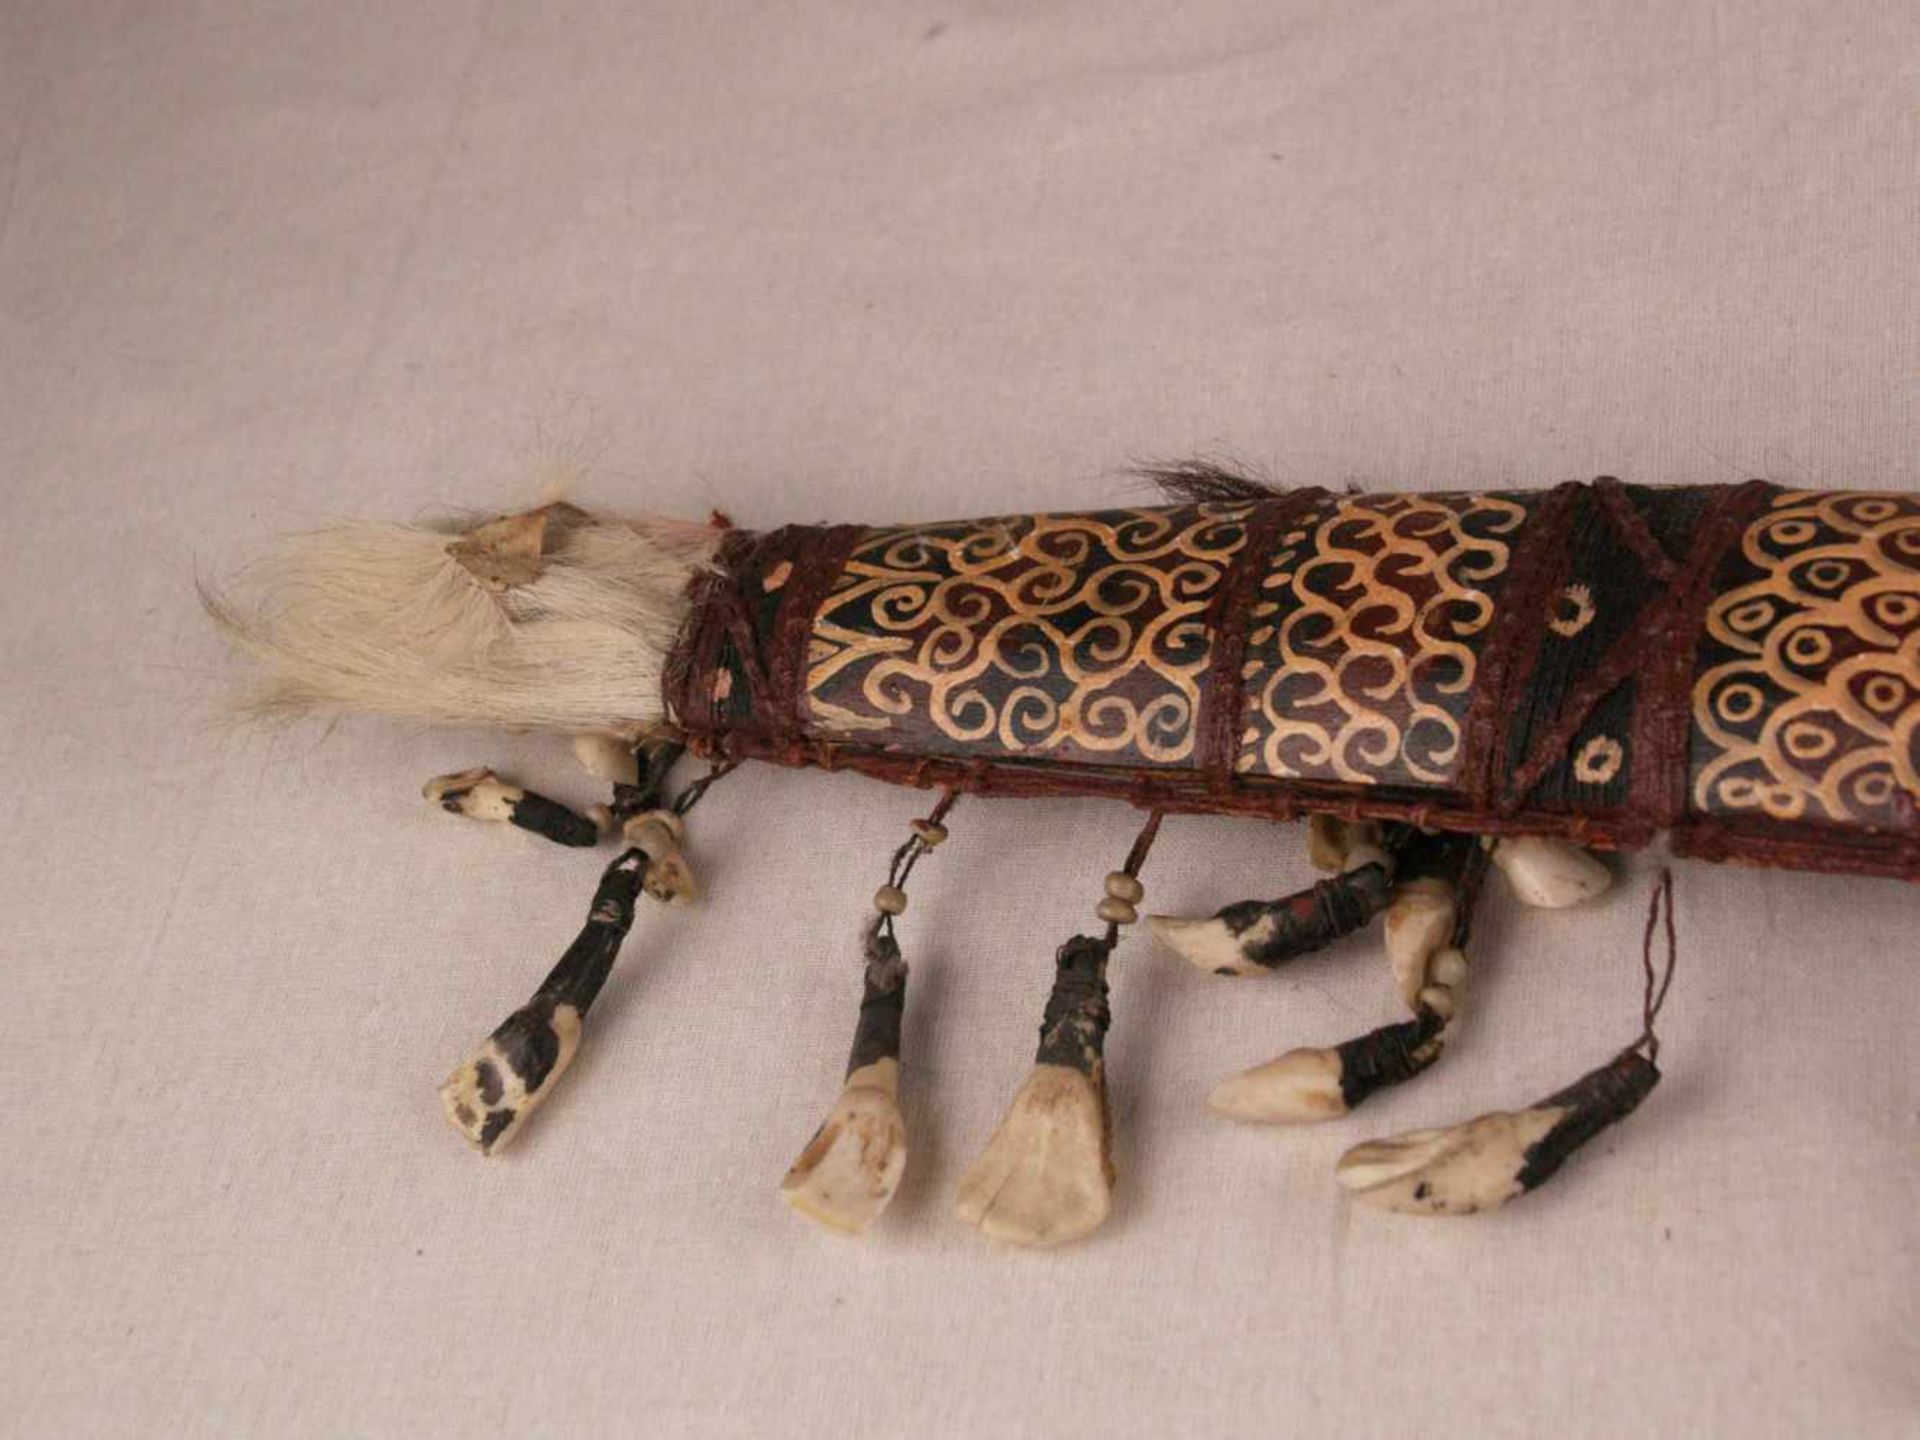 Mandau-Schwert - Borneo, Kopfjägerschwert des Dayak Stammes (auch Parang Ihlang genannt), verzierter - Bild 3 aus 7